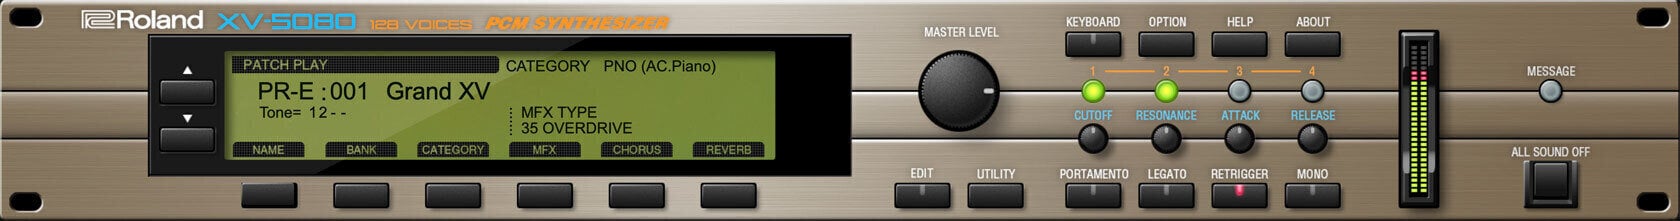 VST Instrument Studio programvara Roland XV-5080 Key (Digital produkt)